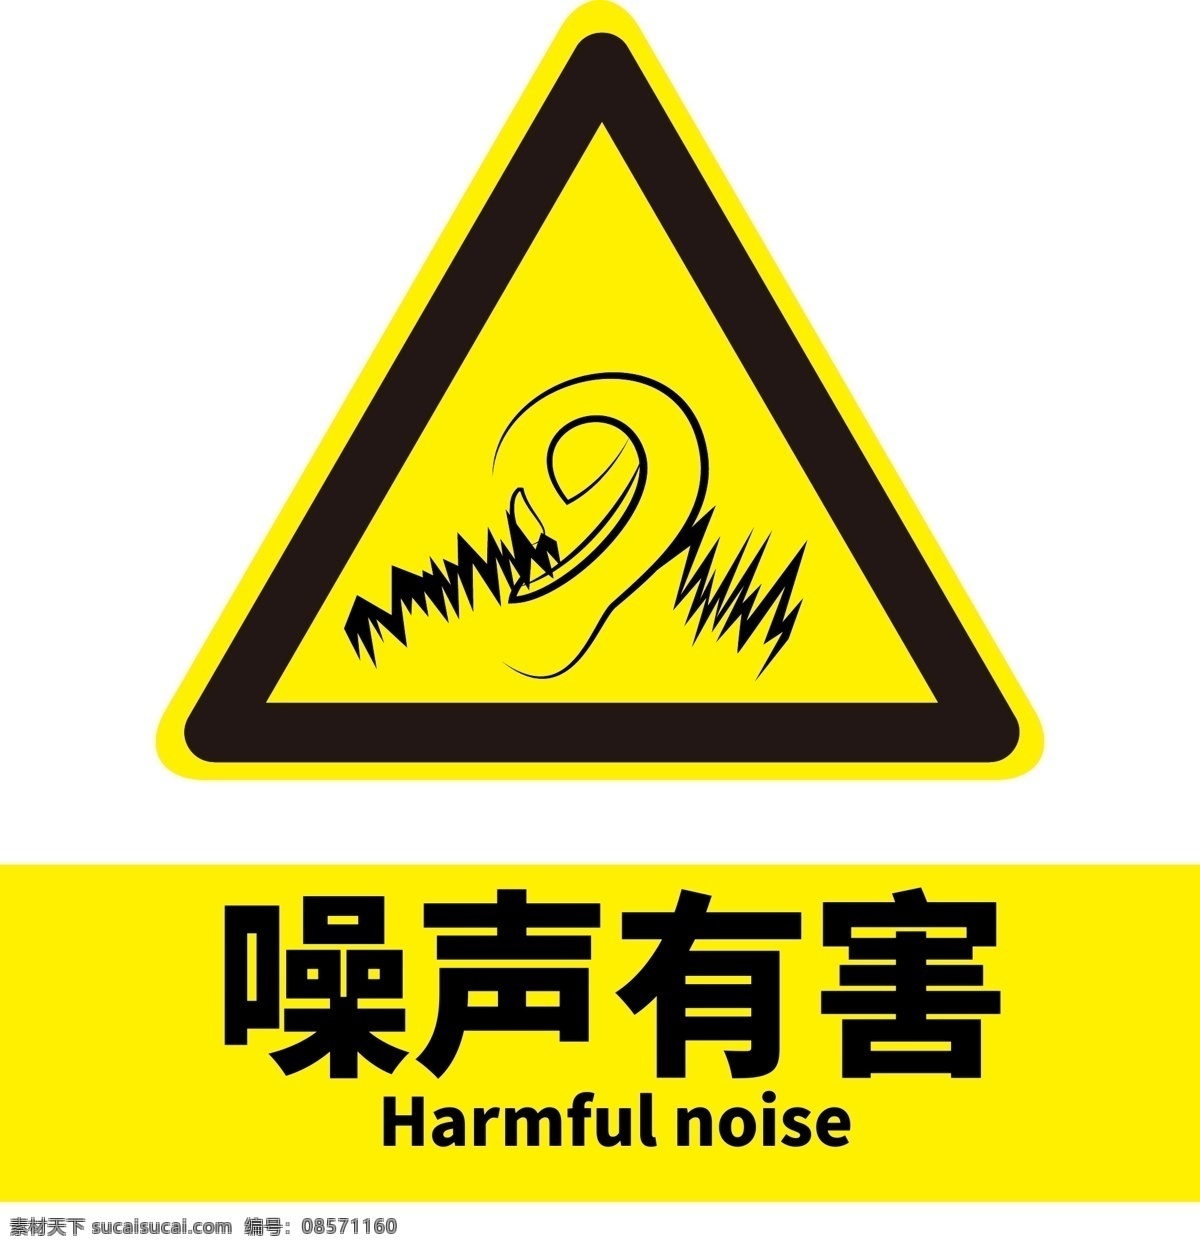 噪音有害 噪音 有害 安全 警示 标语 安全警示标牌